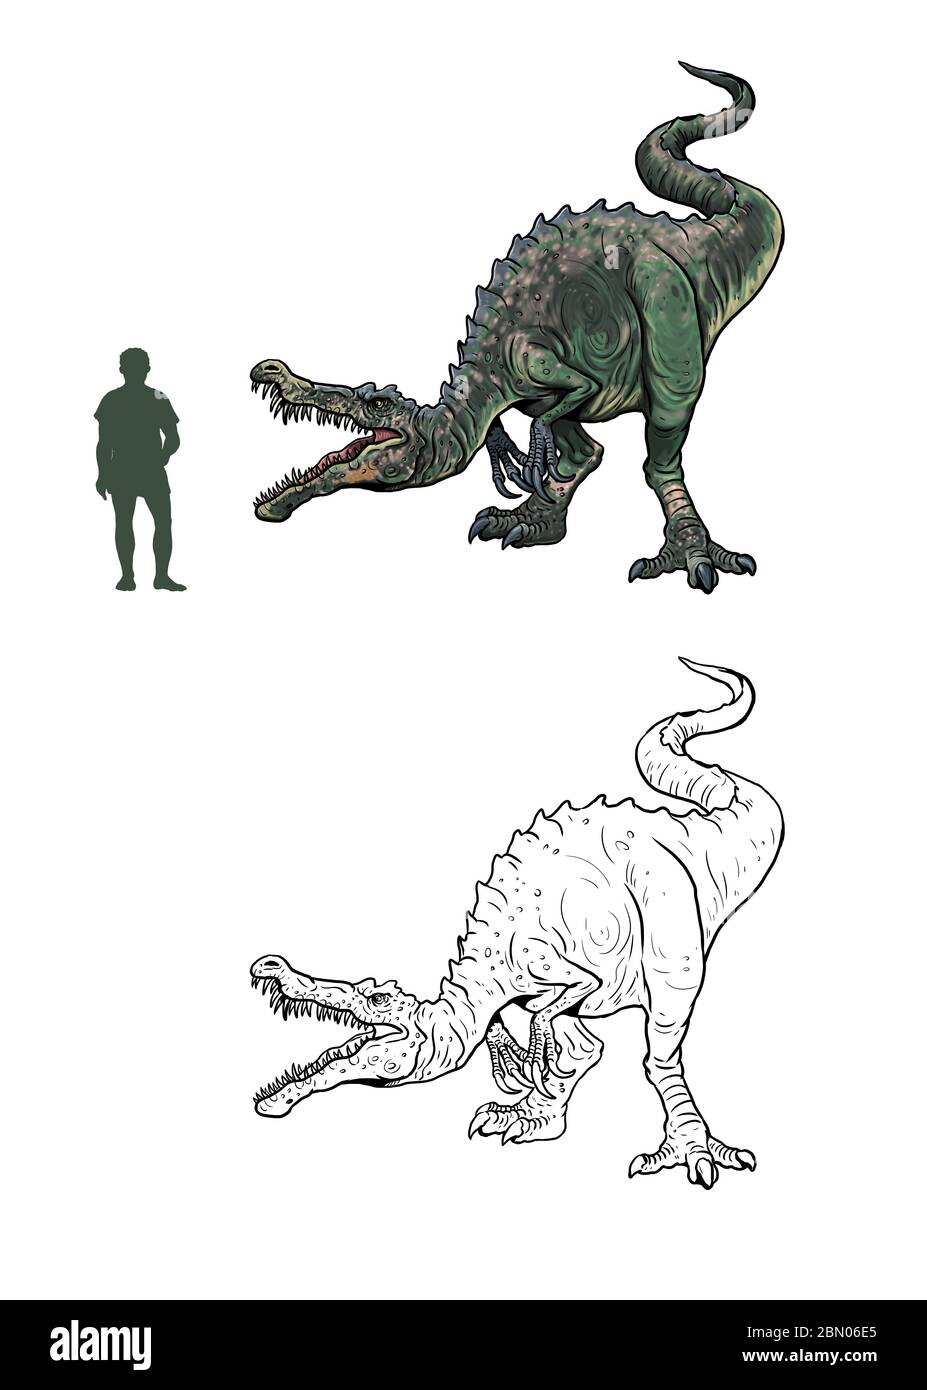 Baryonyx im Vergleich zu Mensch. Vergleich zwischen Dinosaurier und Mensch. Dino Malvorlagen. Stockfoto